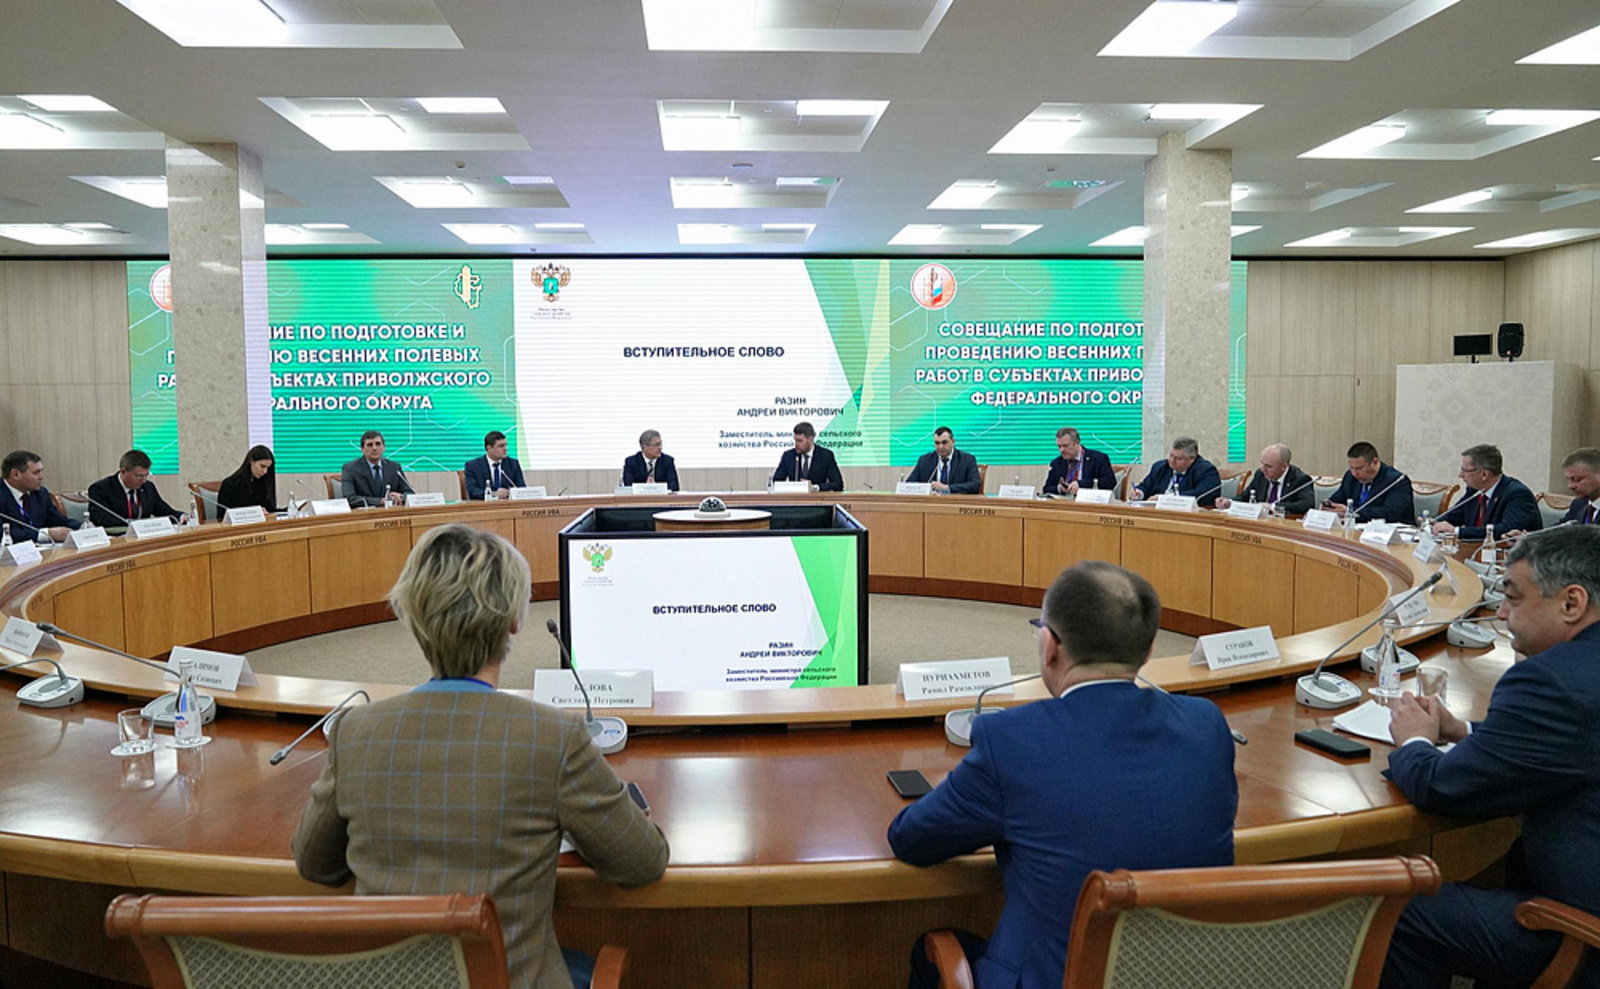 Радий Хабиров обозначил приоритеты агропромышленной политики Башкирии